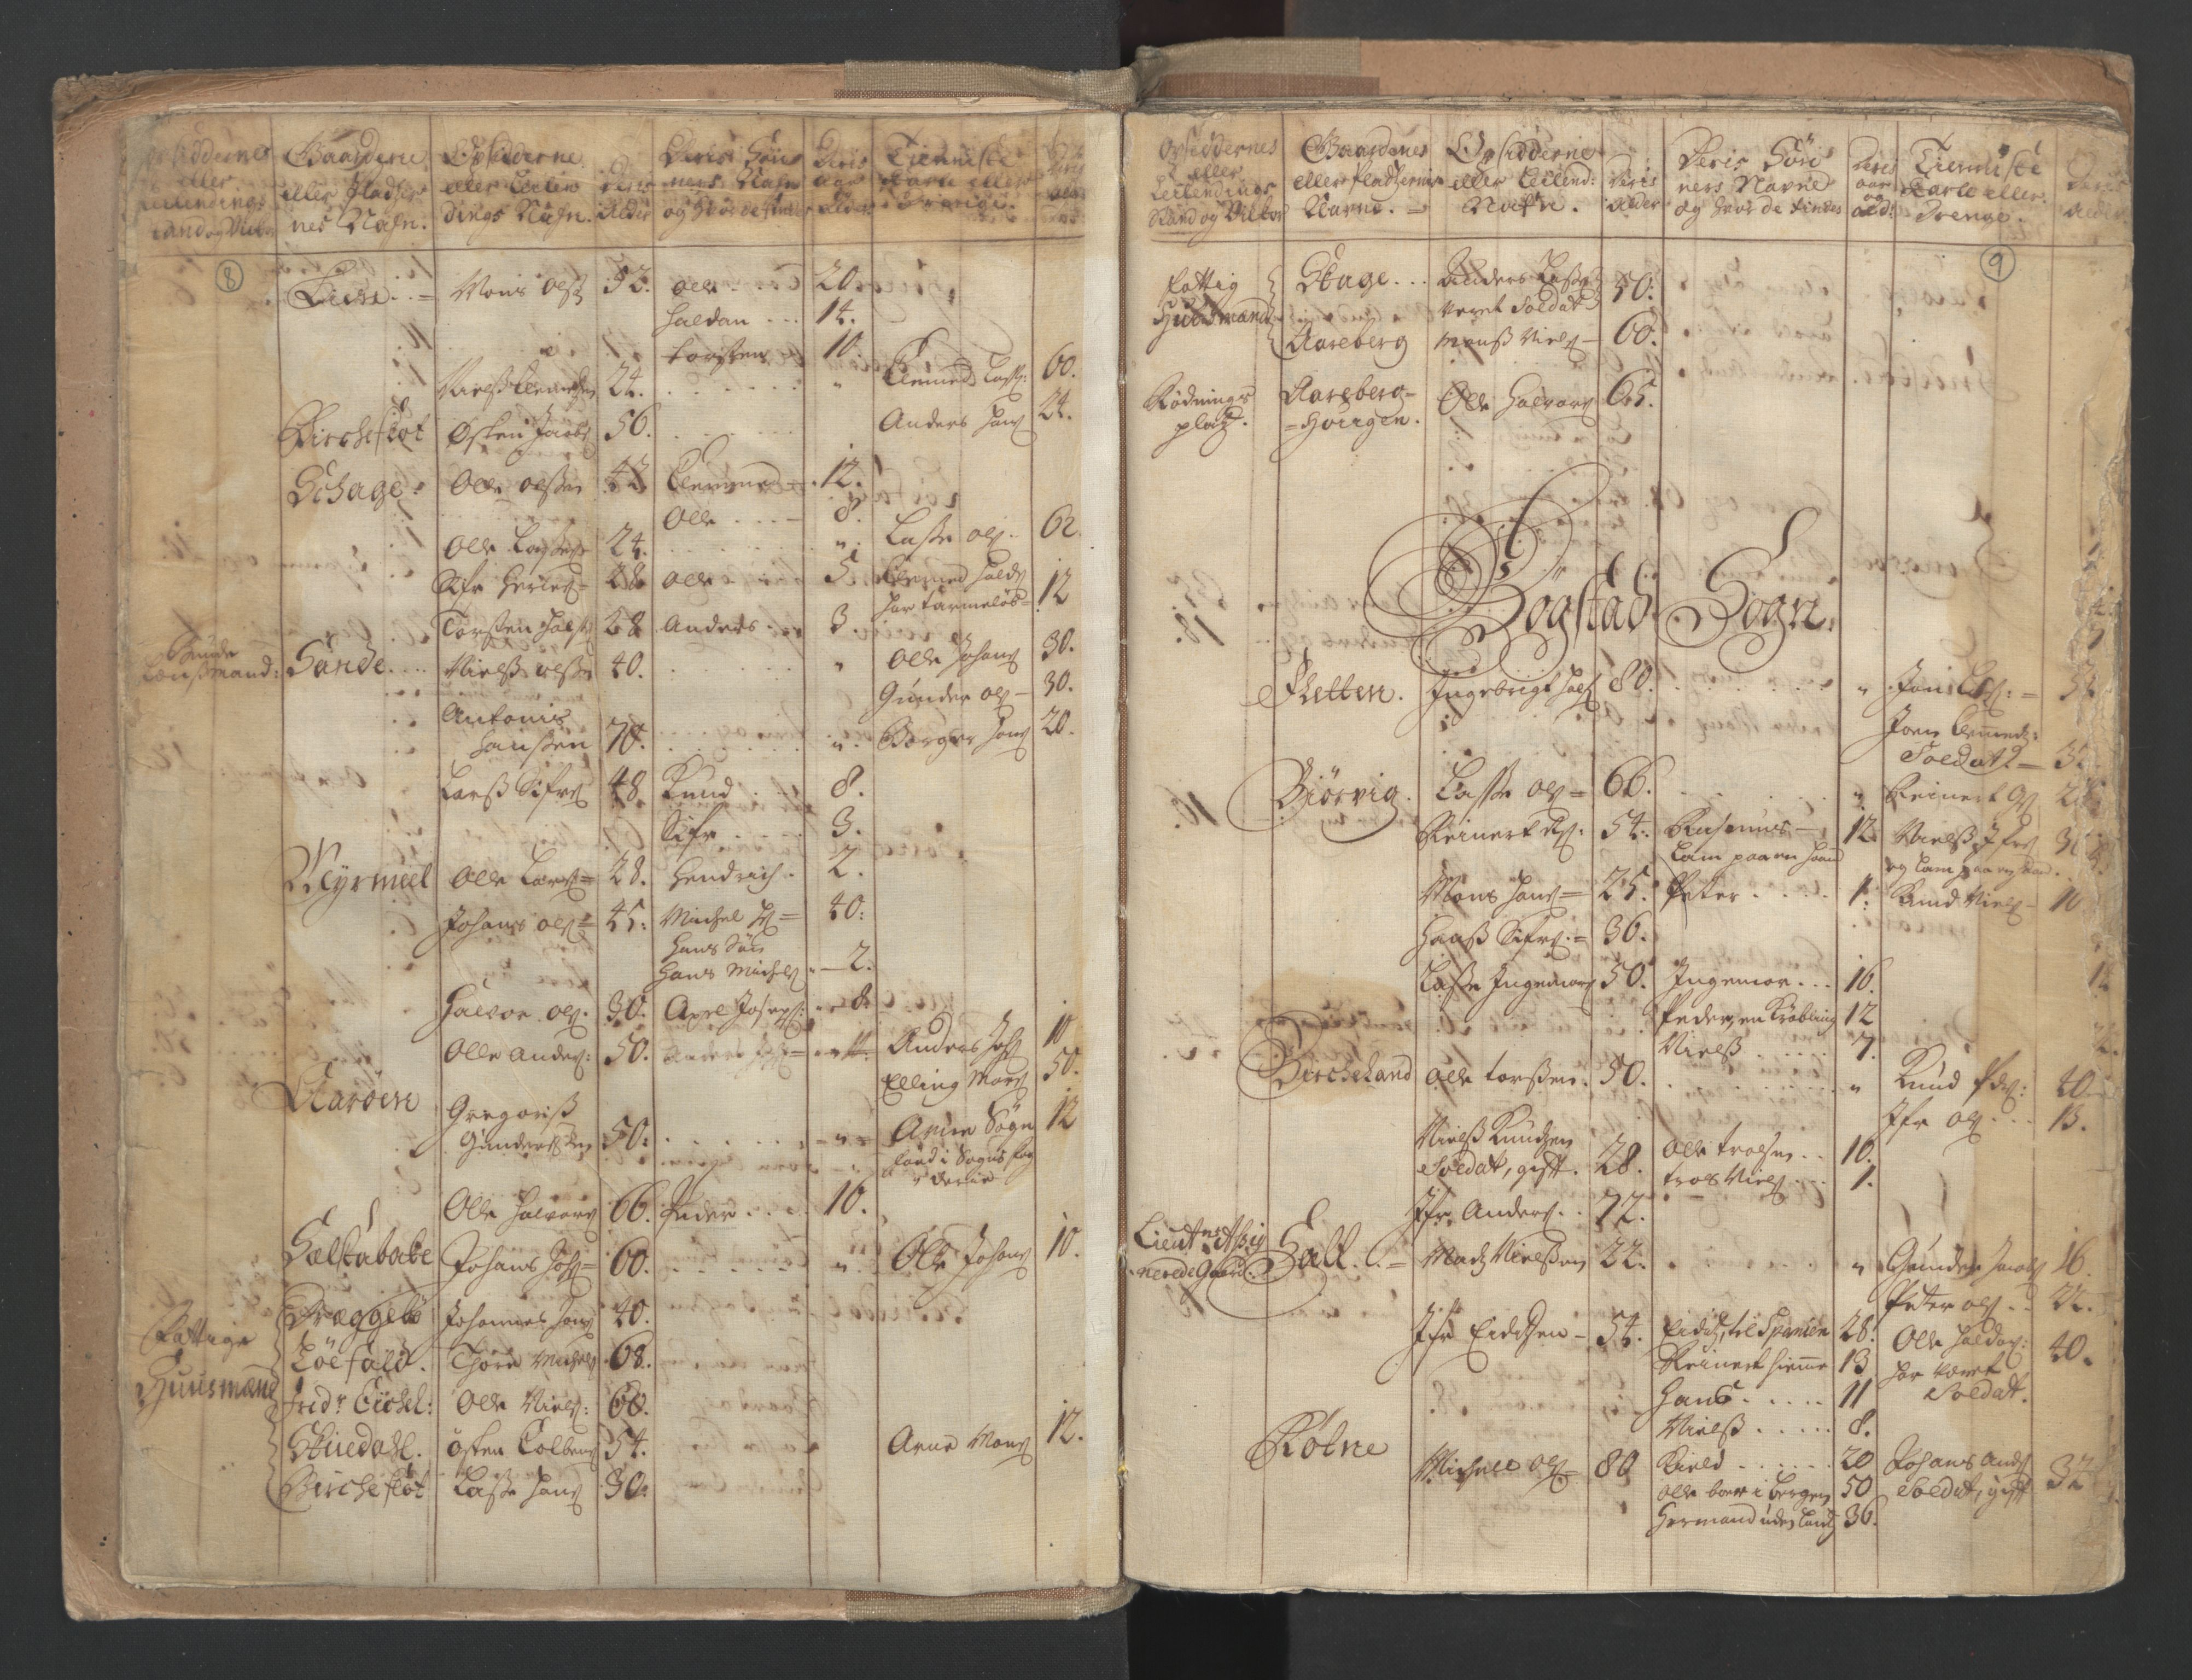 RA, Census (manntall) 1701, no. 9: Sunnfjord fogderi, Nordfjord fogderi and Svanø birk, 1701, p. 8-9